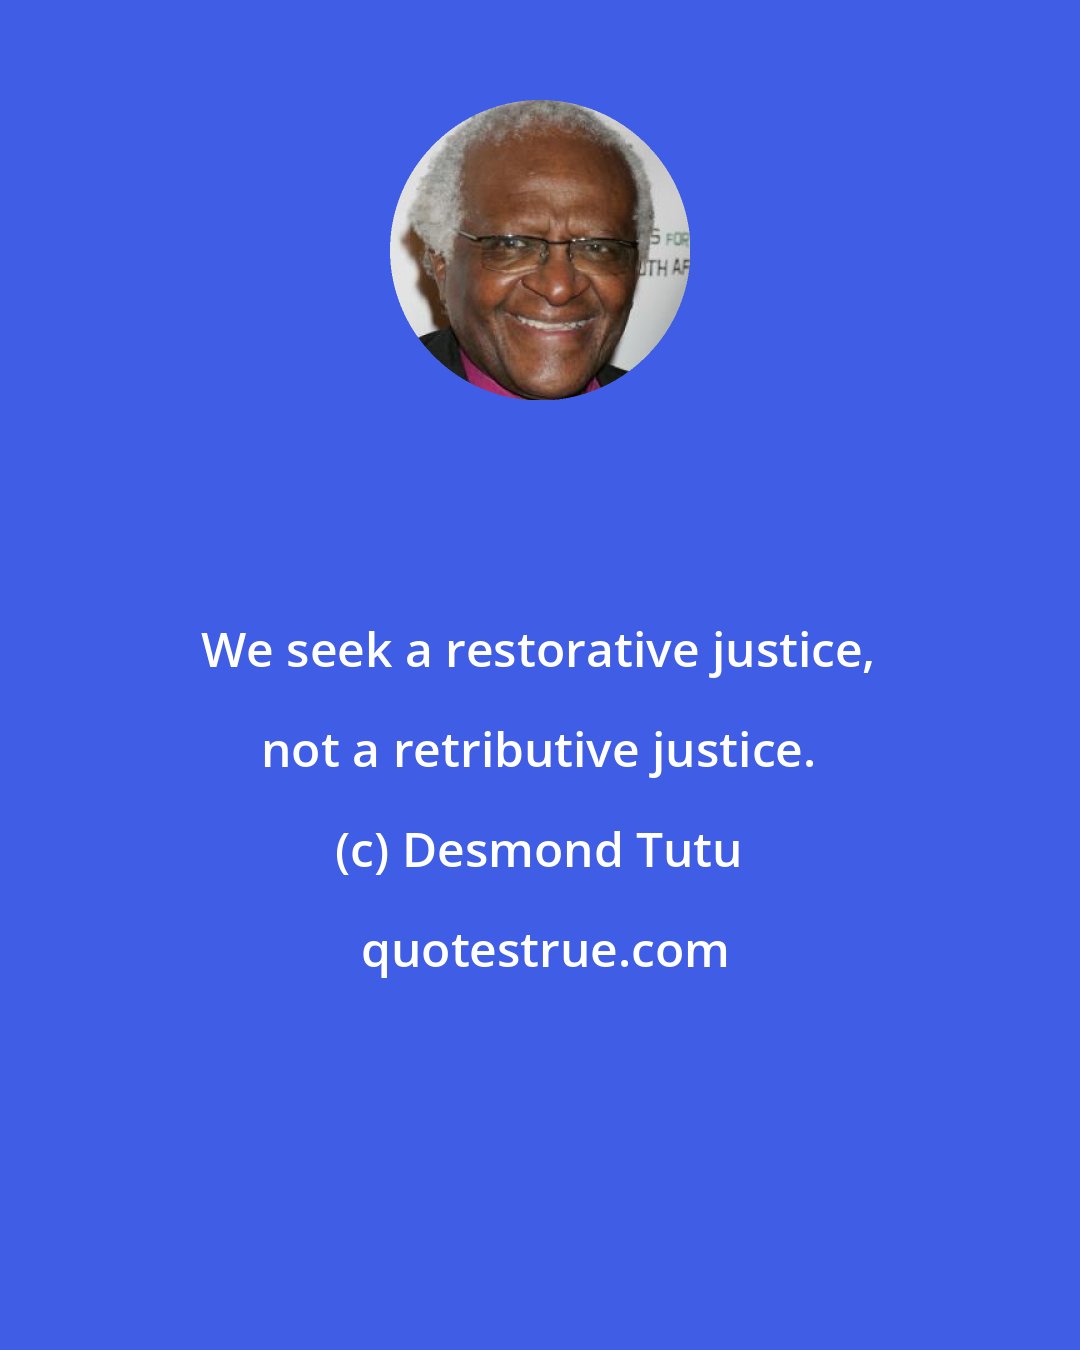 Desmond Tutu: We seek a restorative justice, not a retributive justice.